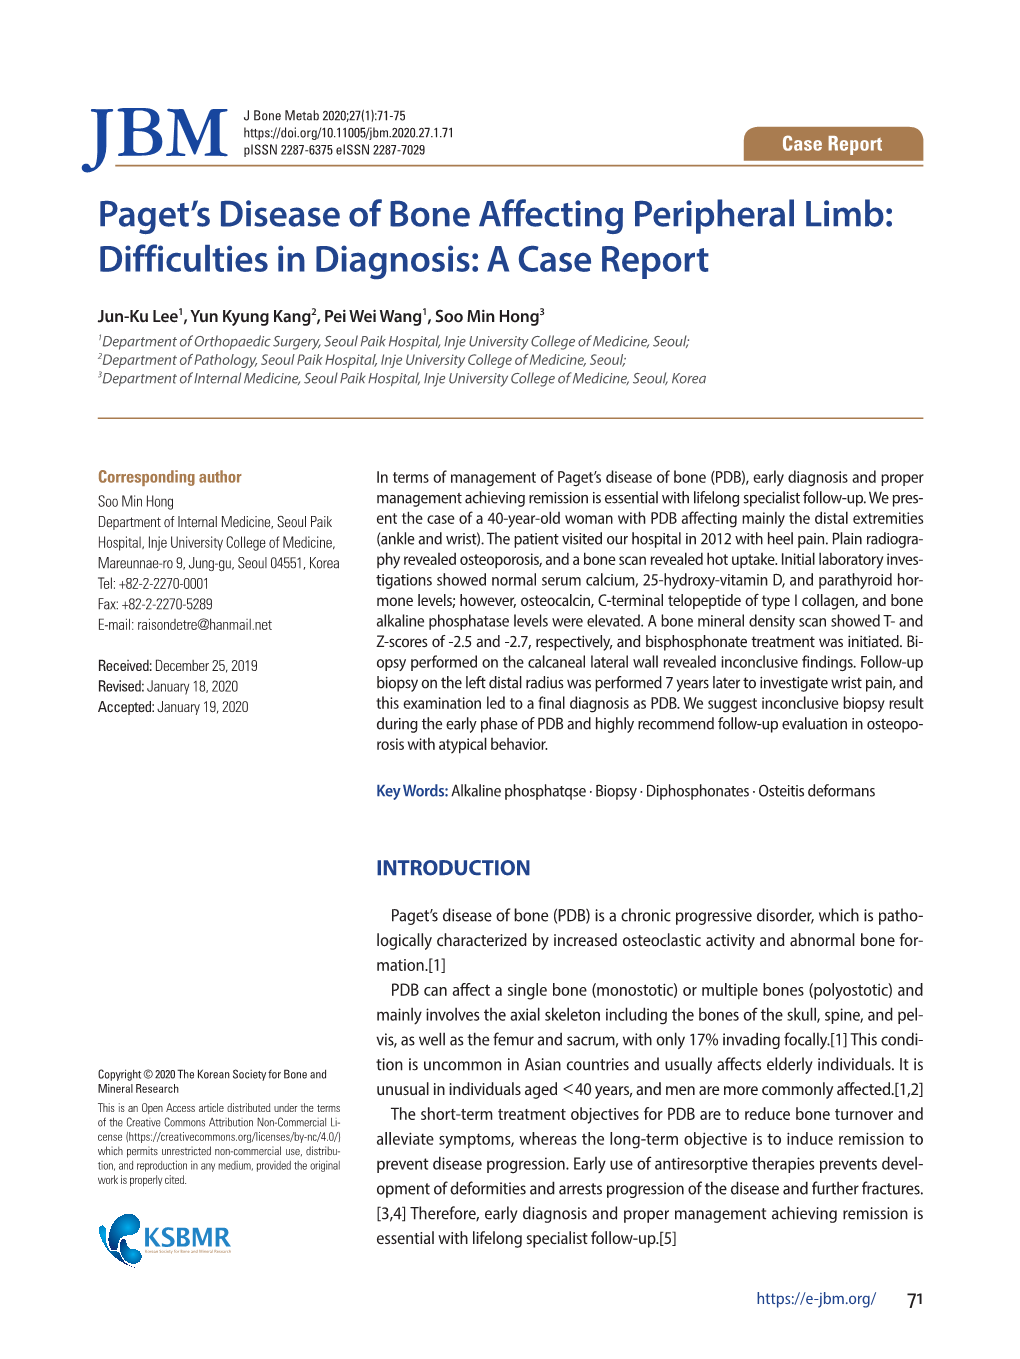 Paget's Disease of Bone Affecting Peripheral Limb